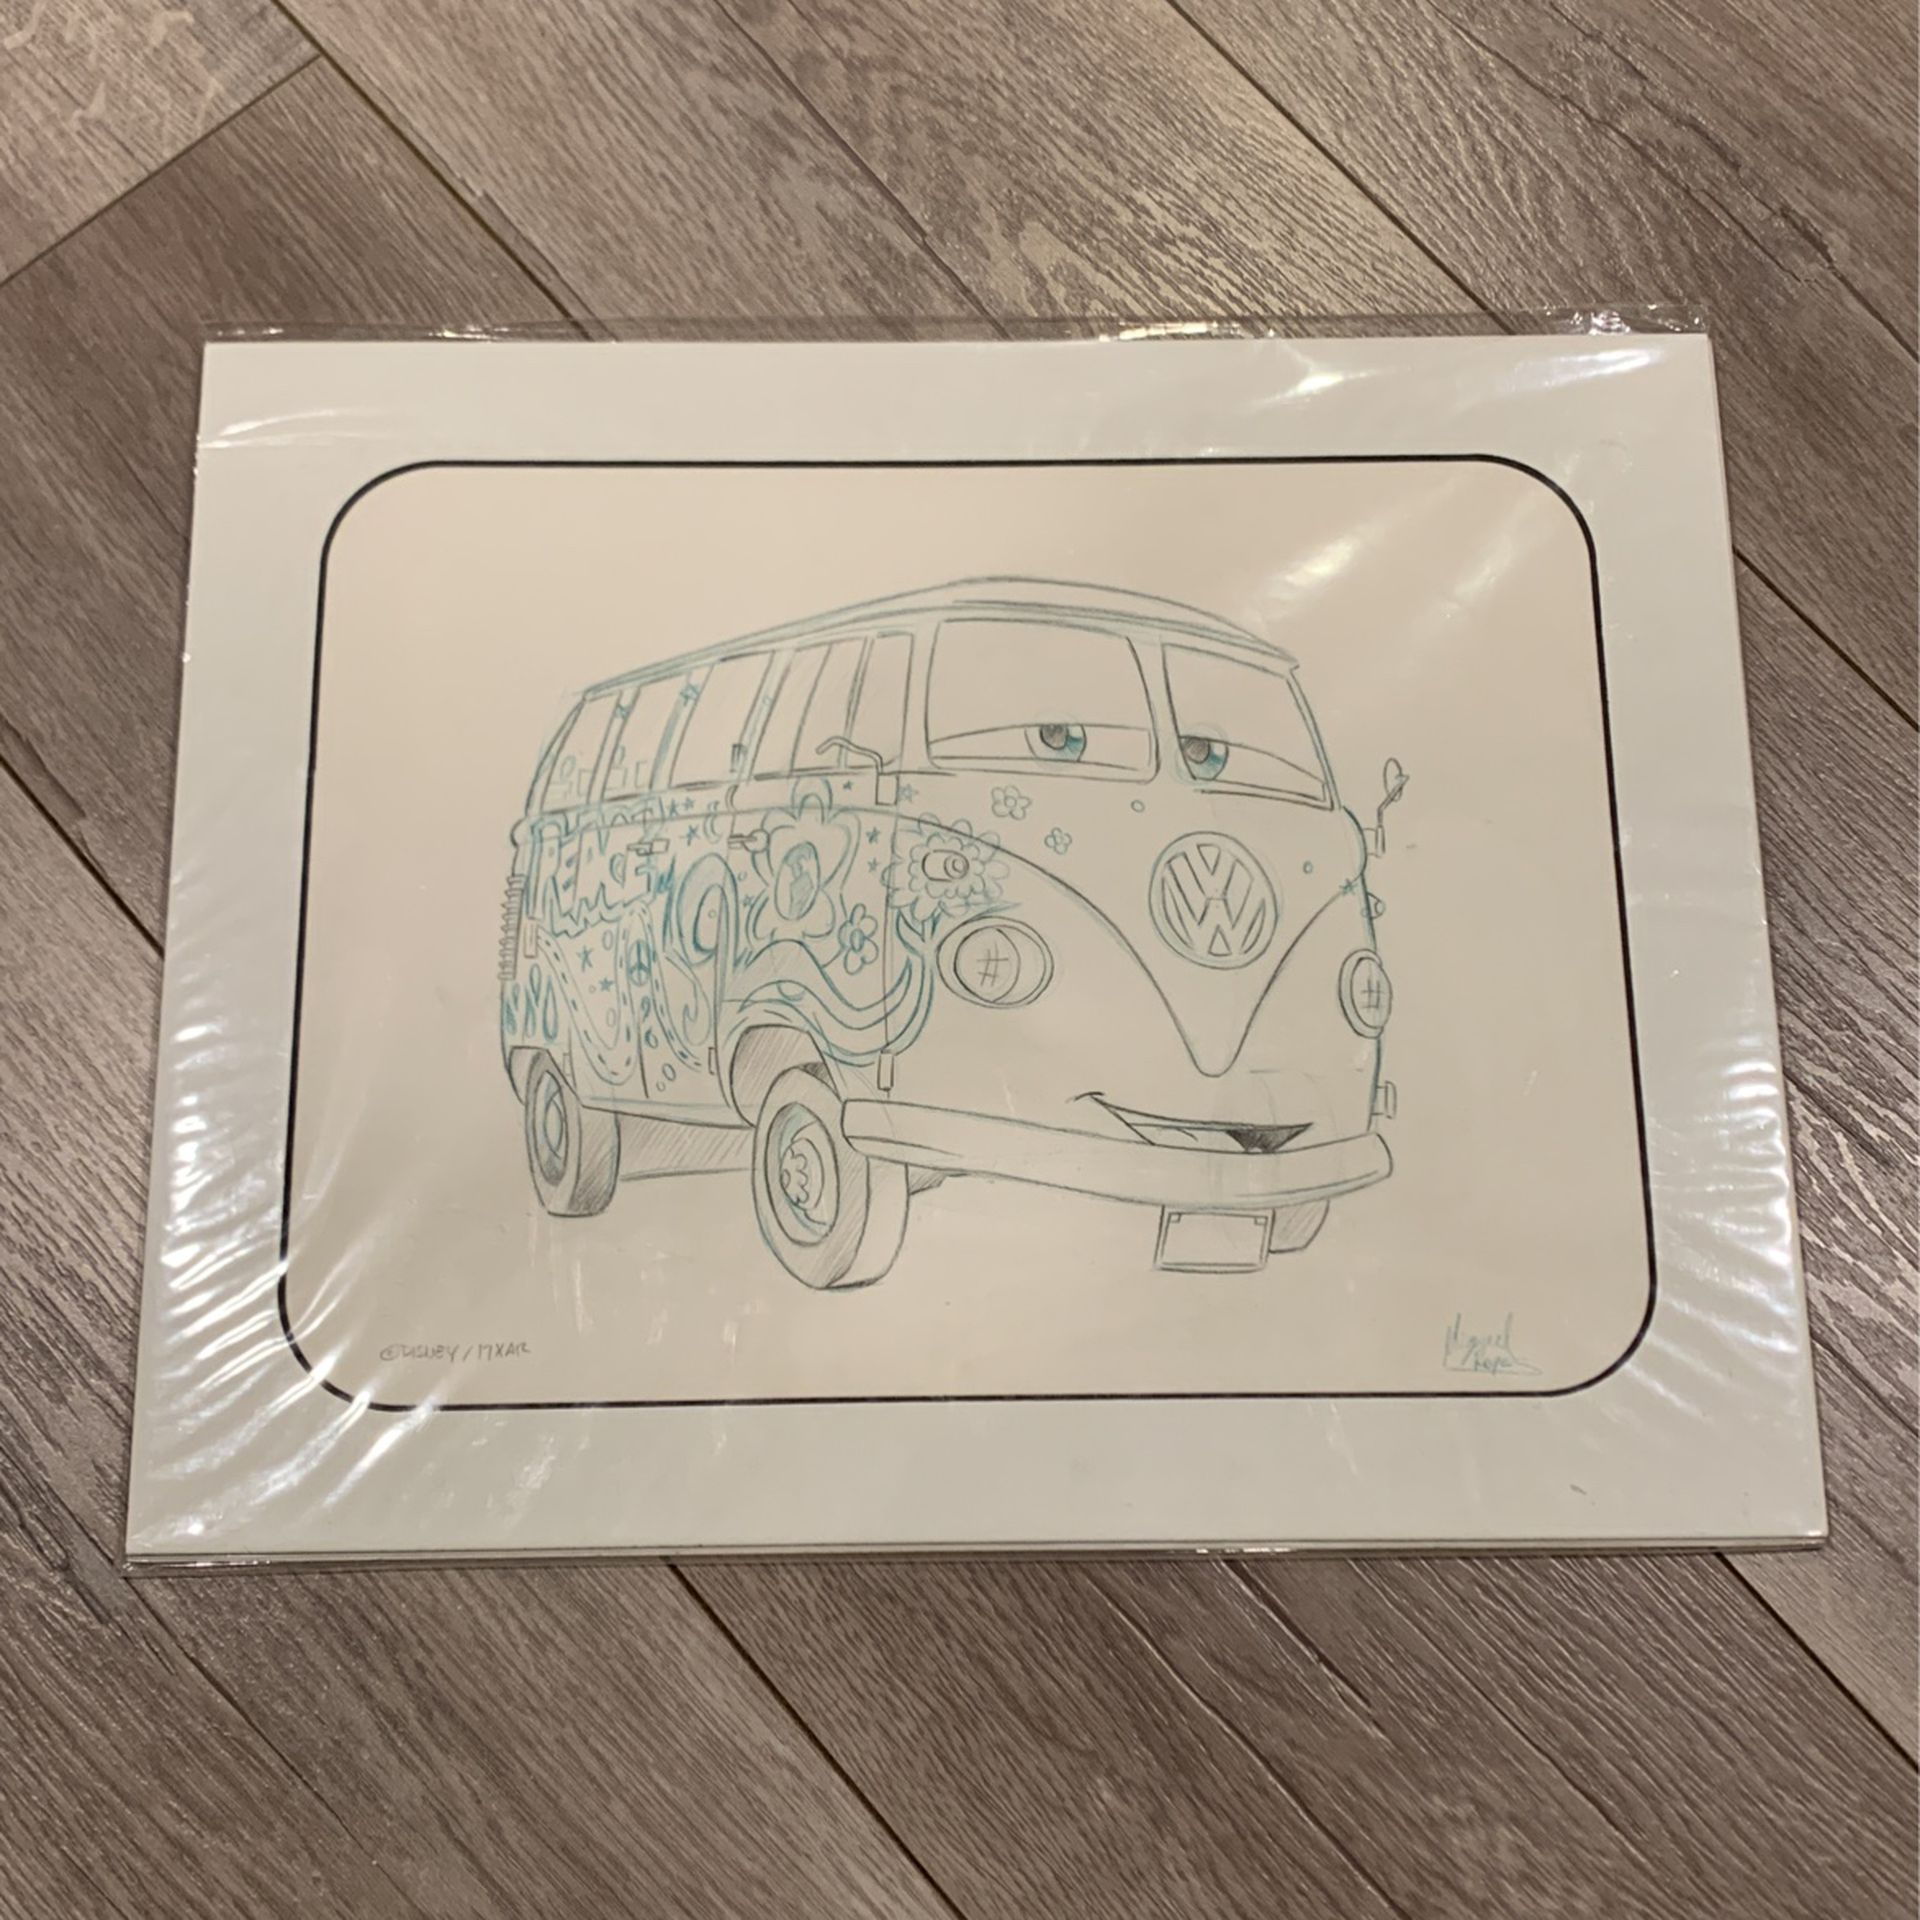 Disney Pixar Cars Sketch (Fillmore)